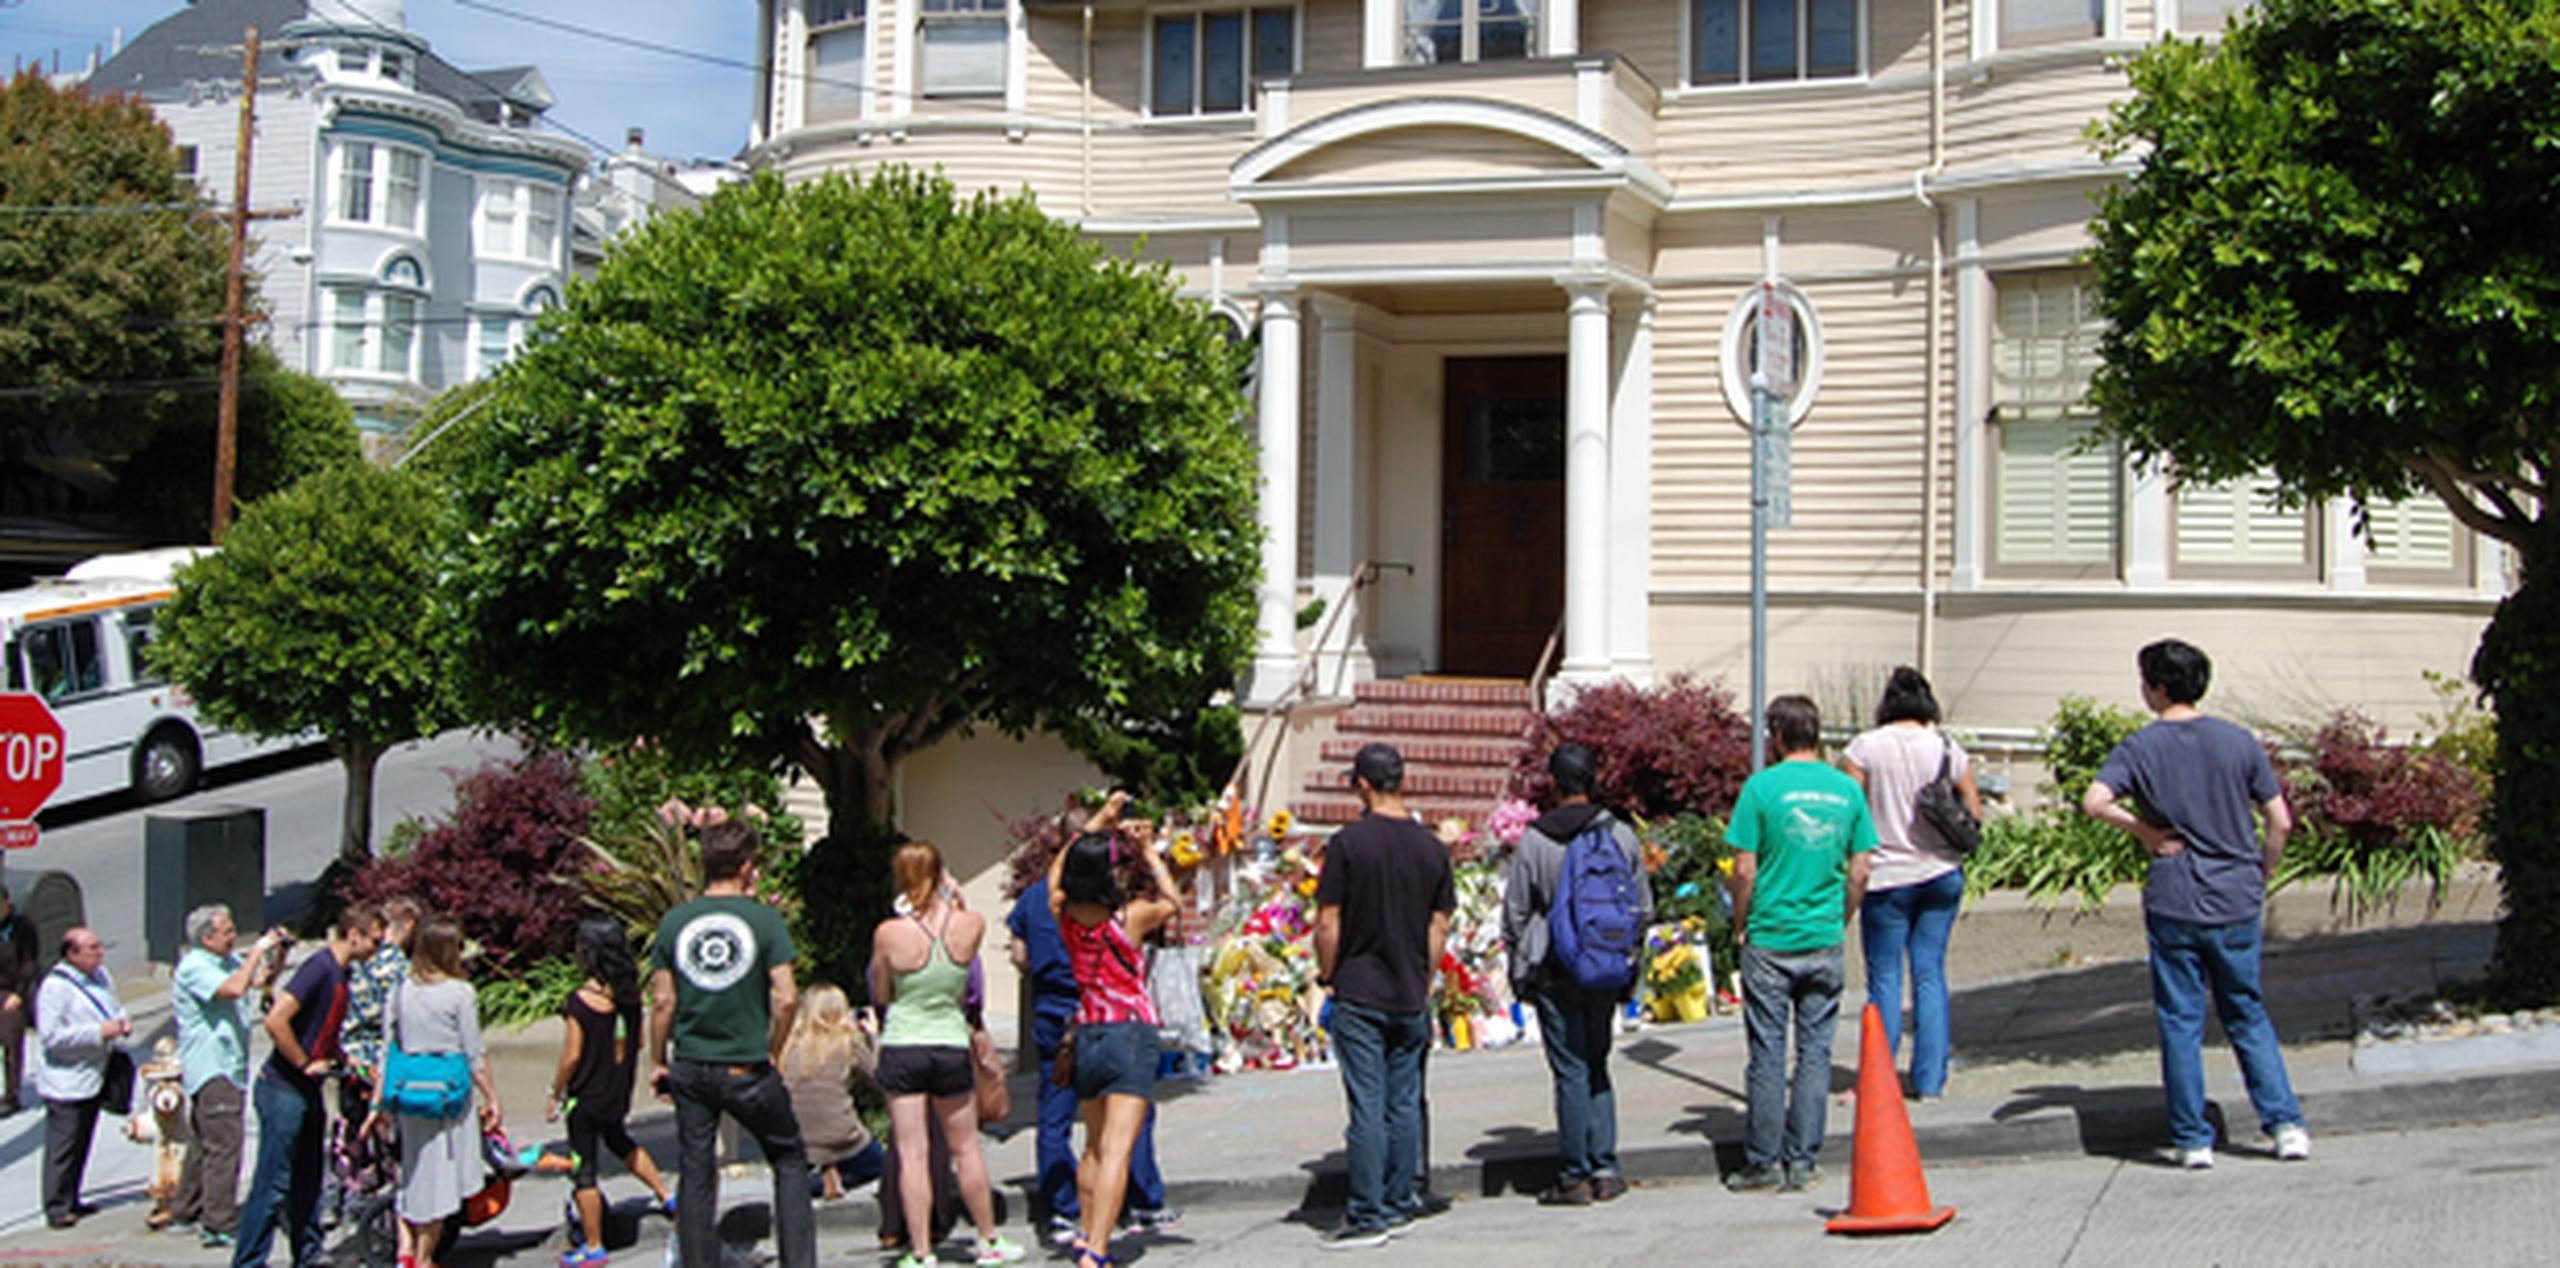 Ramos de flores de todos los colores, velas, dedicatorias, fotografías y peluches se amontonan sobre las escaleras de acceso a la casa de estilo victoriano de la calle Steiner de San Francisco. (EFE)